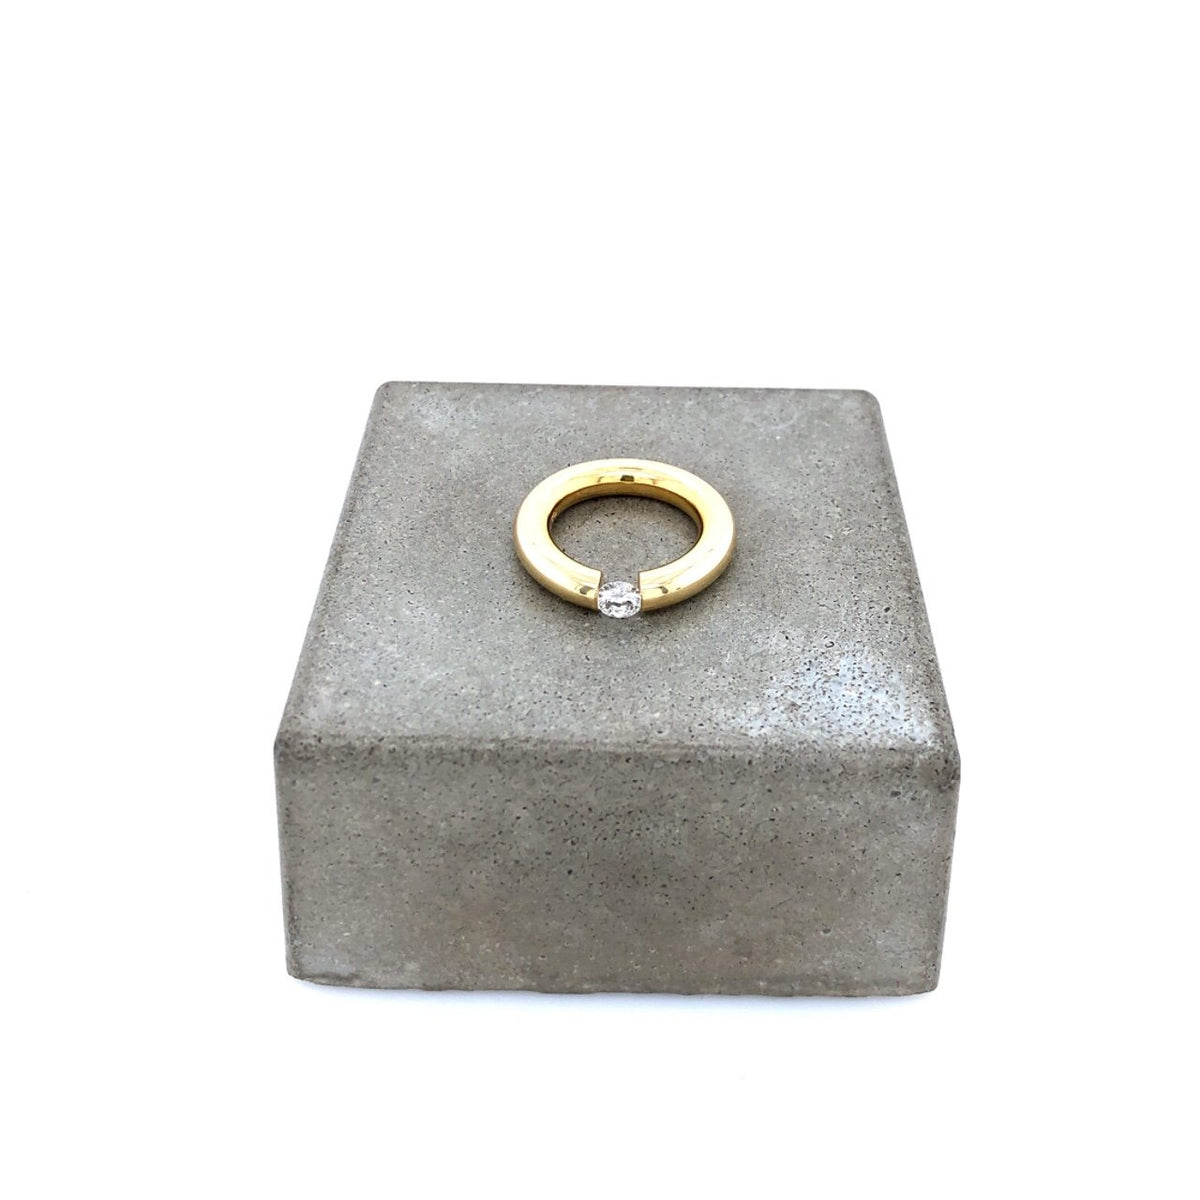 Second Hand Ring Spannring Gelbgold 750 mit Brillant 0,42 ct-10385-Prejou